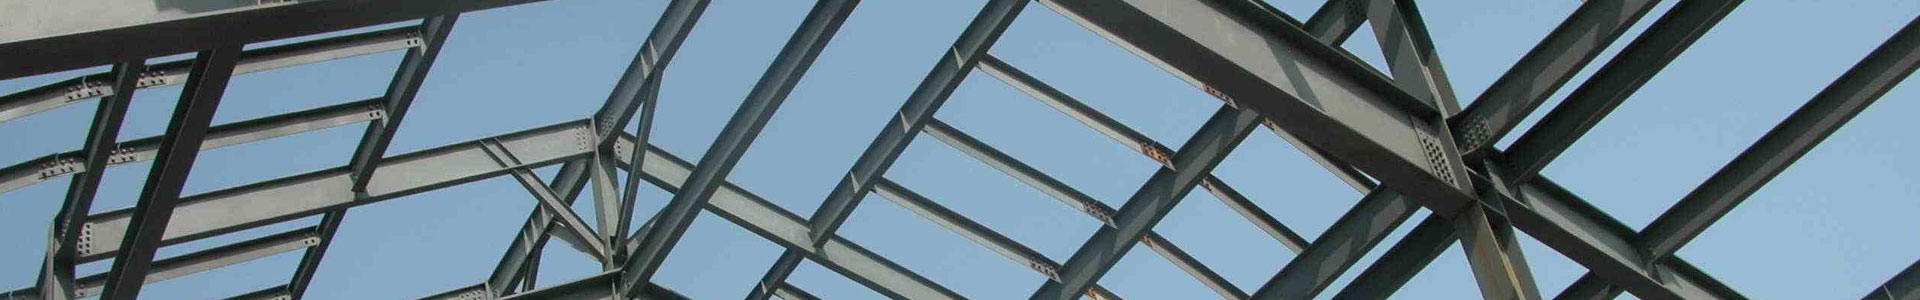 钢结构工程及组合安装